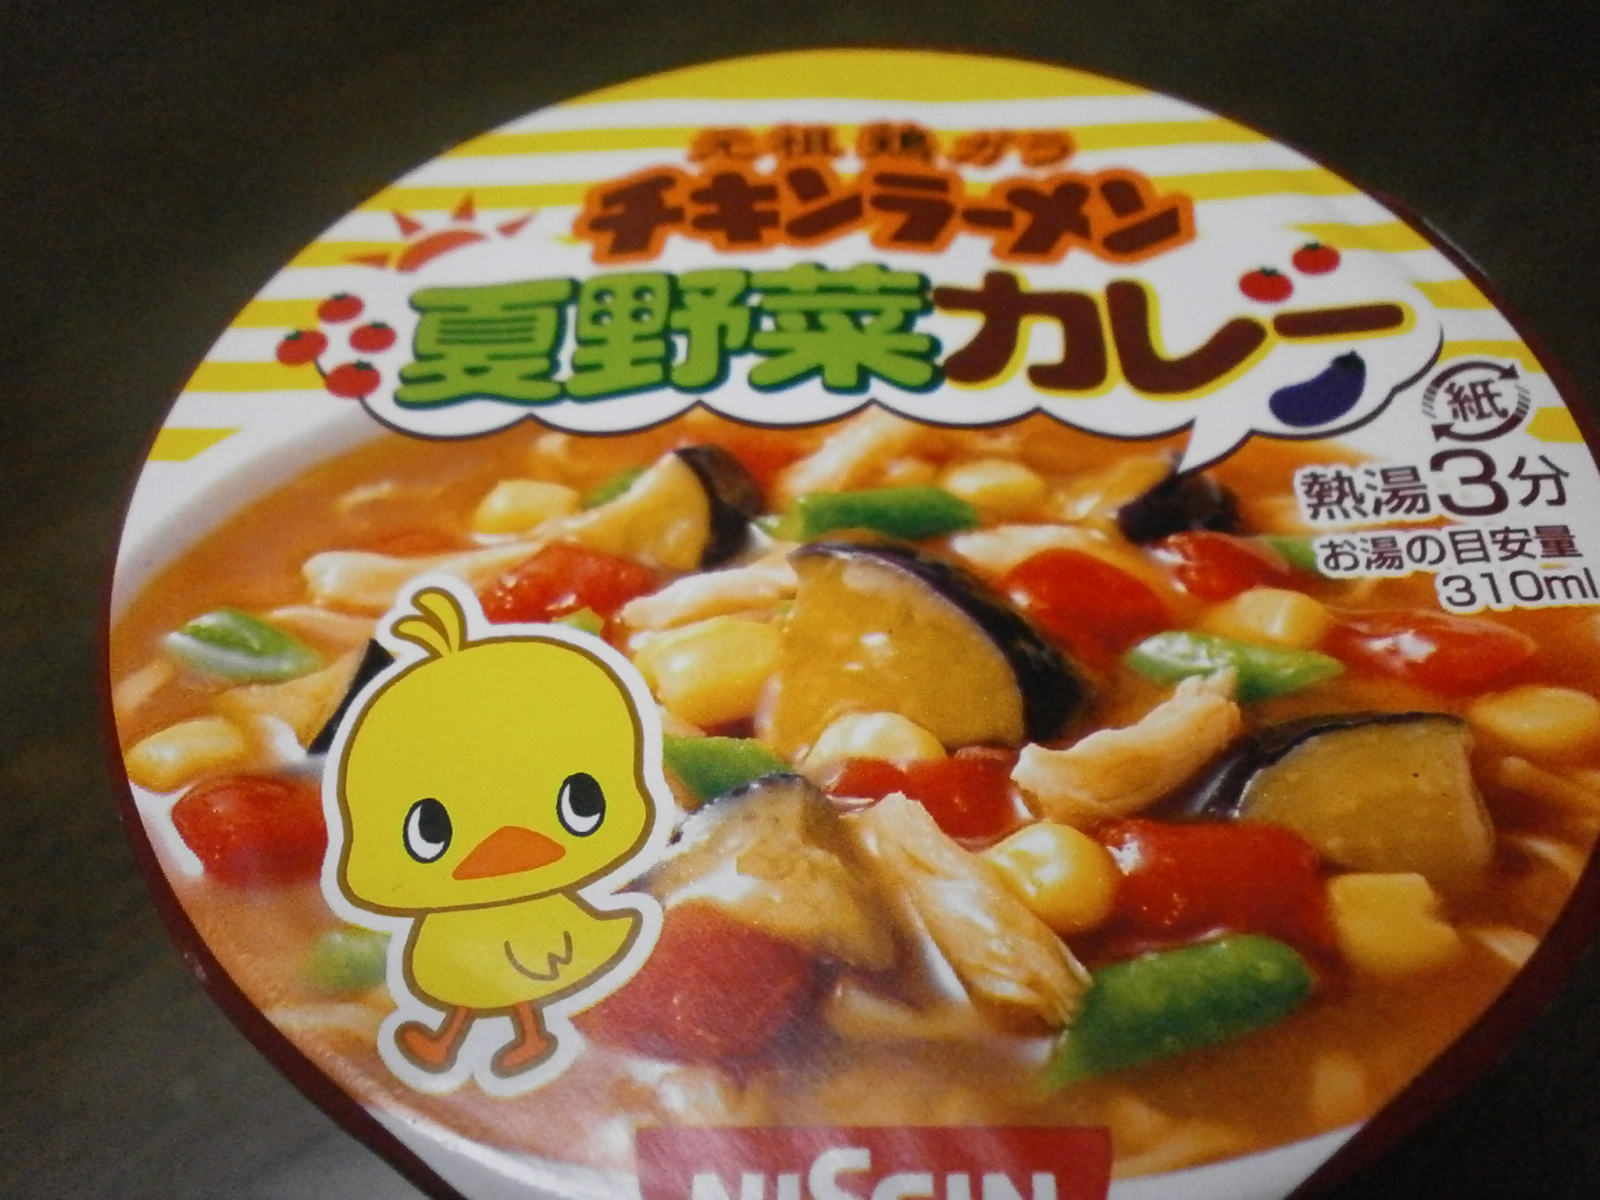 Verão Vegetable Curry Chicken Ramen